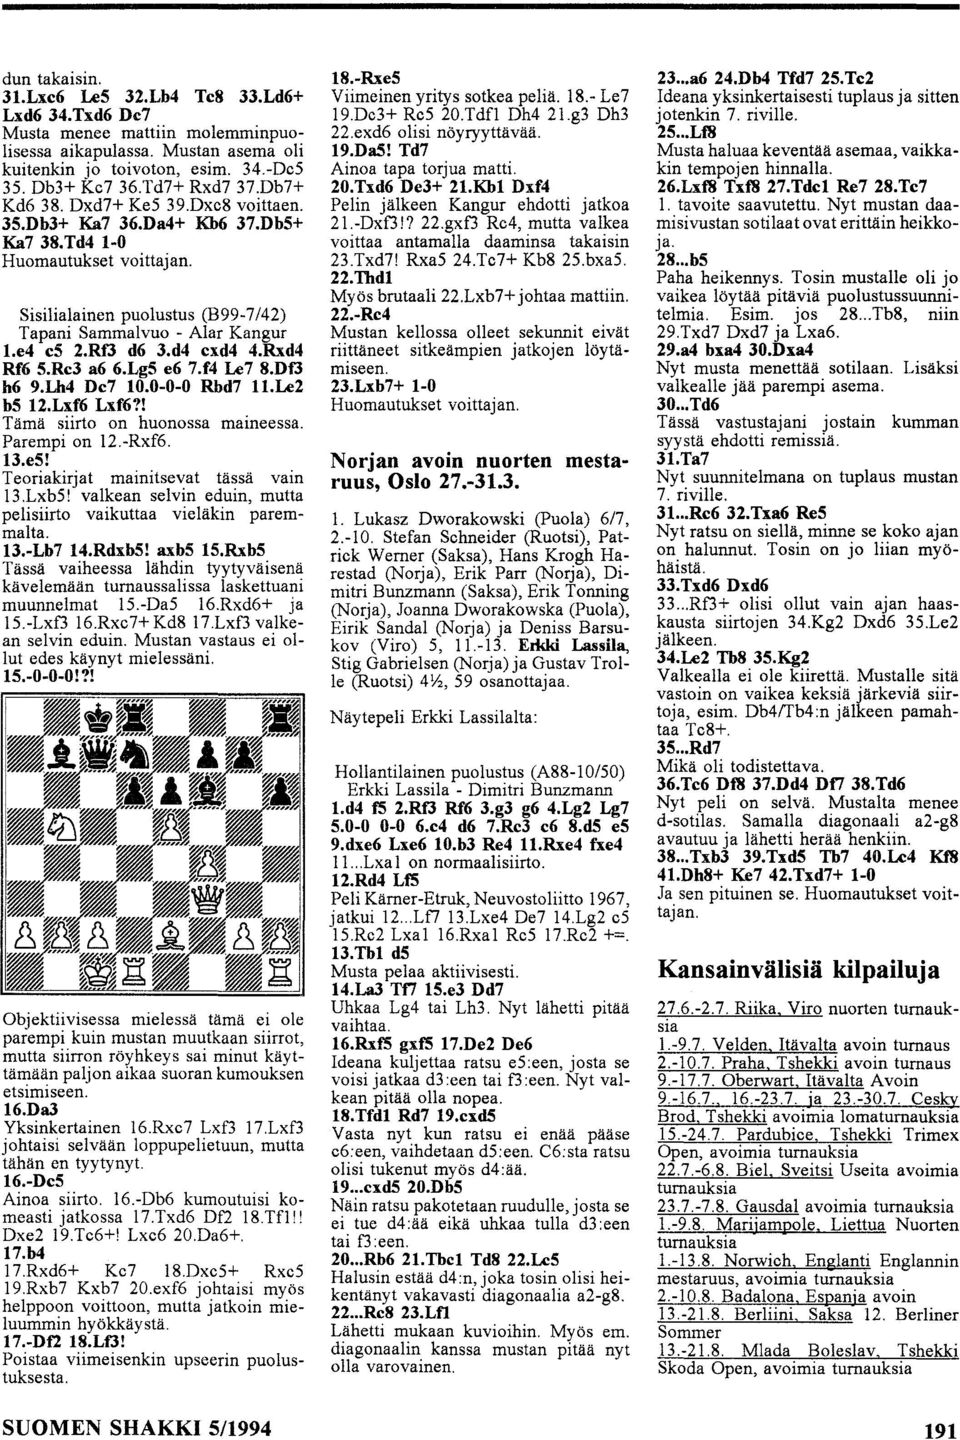 Rf3 d6 3.d4 cxd4 4.Rxd4 Rf6 S.Re3 a6 6.LgS e6 7.f4 Le7 8.Df3 h6 9.Lh4 De7 10.0-0-0 Rbd7 11.Le2 bs 12.Lxf6 Lxf6?! Tämä siirto on huonossa maineessa. Parempi on 12.-Rxf6. 13.eS!